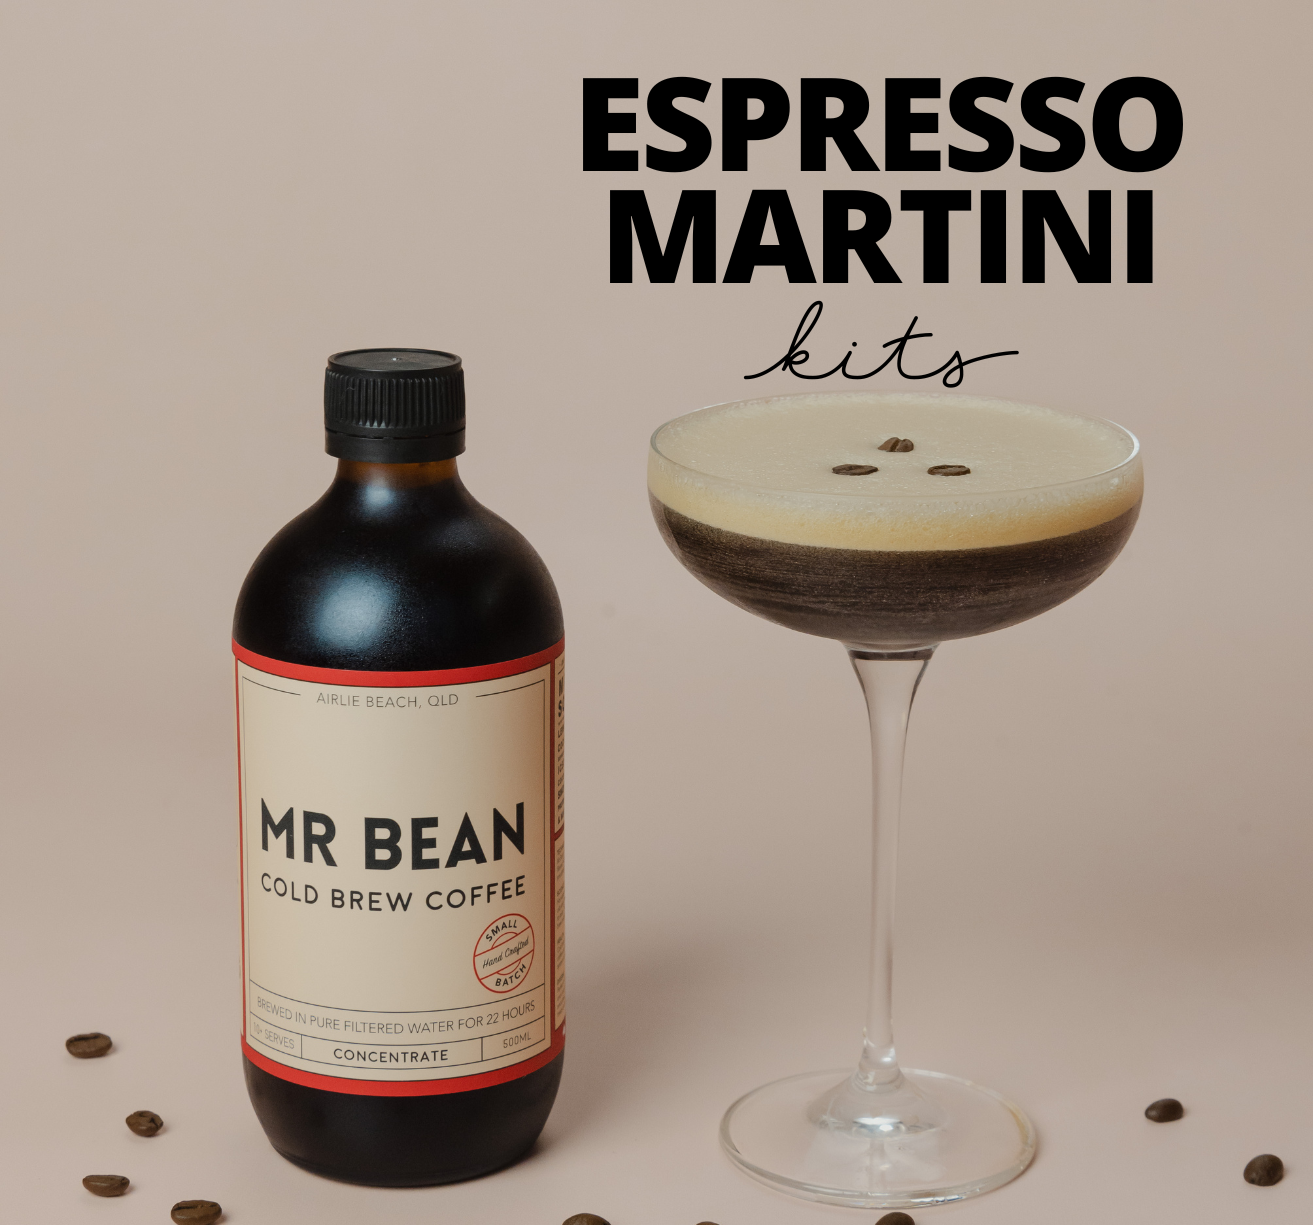 Espresso Martini Cocktail Kit - Mr Bean Cold Brew Coffee